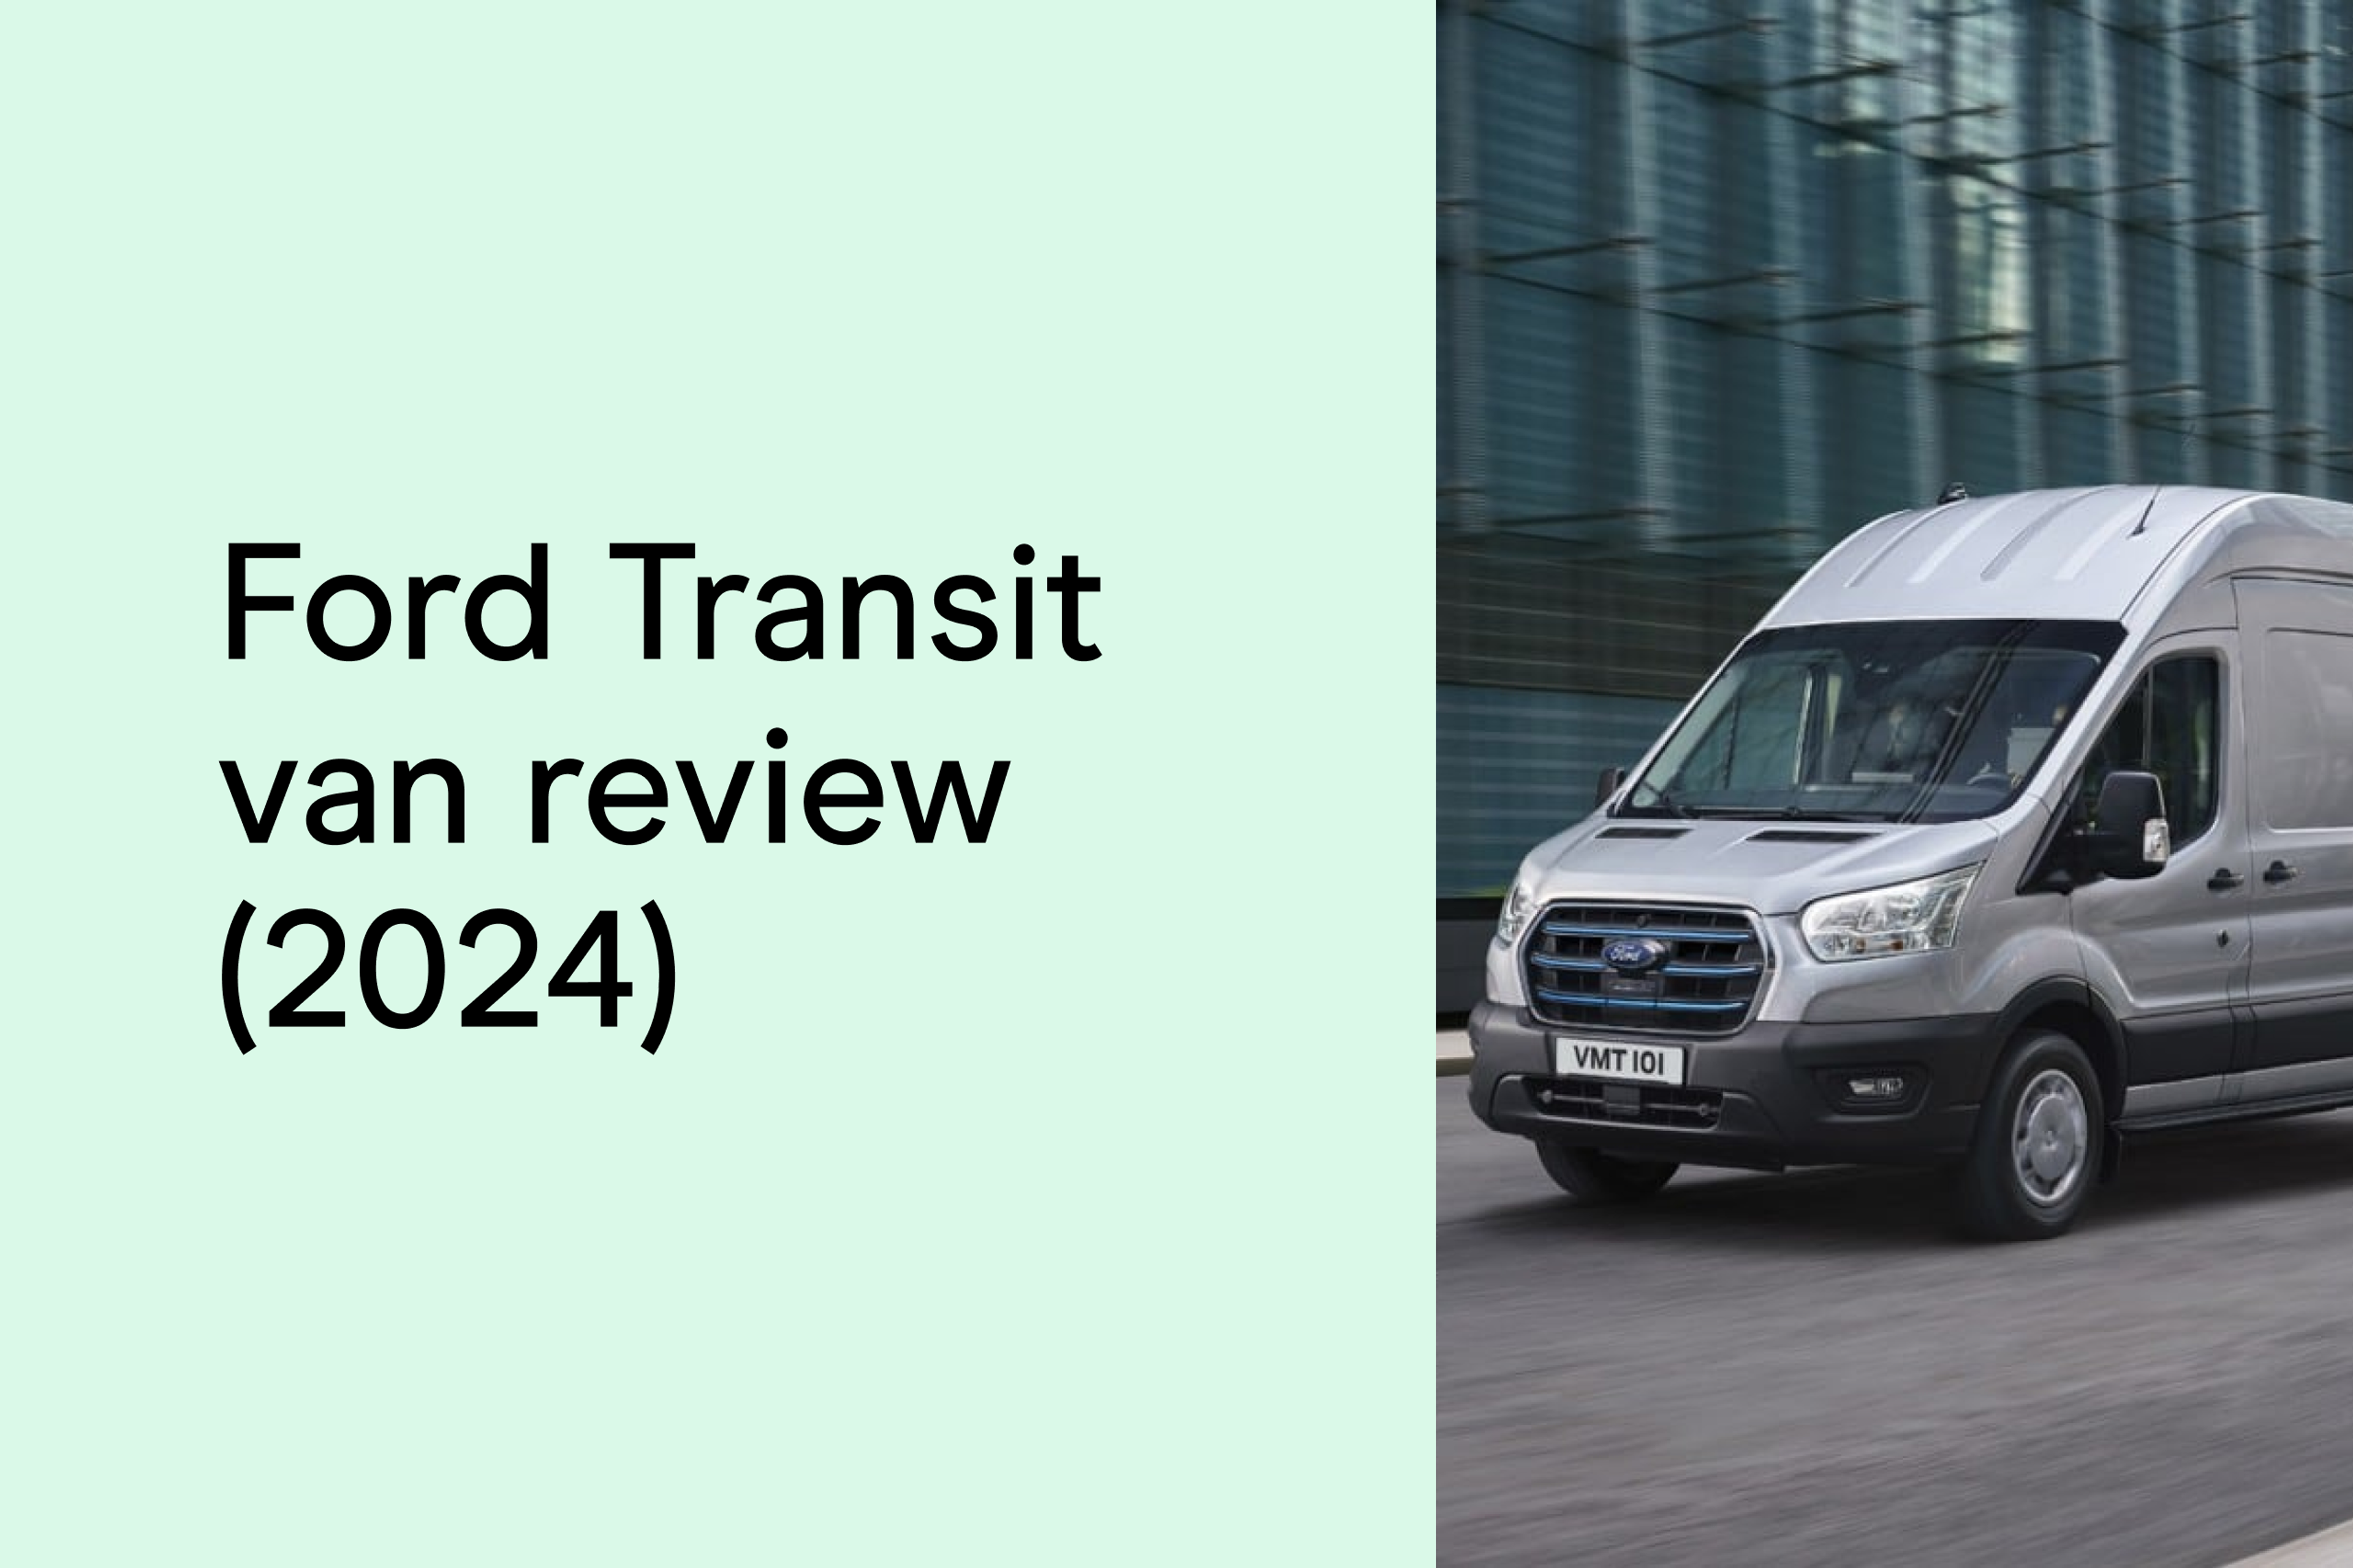 Ford Transit van review (2024)